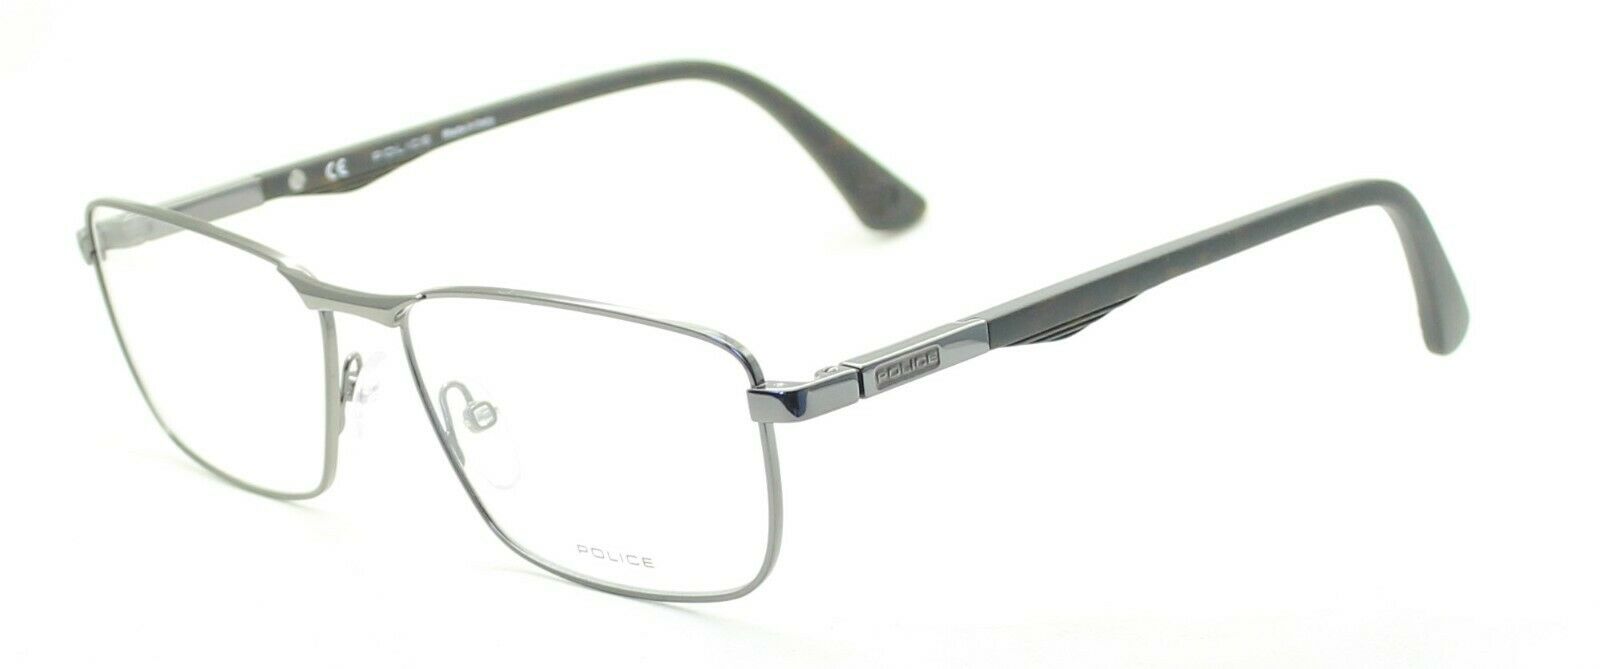 POLICE BROOKLYN 6 VPL 395N 568Y 56mm Eyewear FRAMES RX Optical Eyeglasses Italy